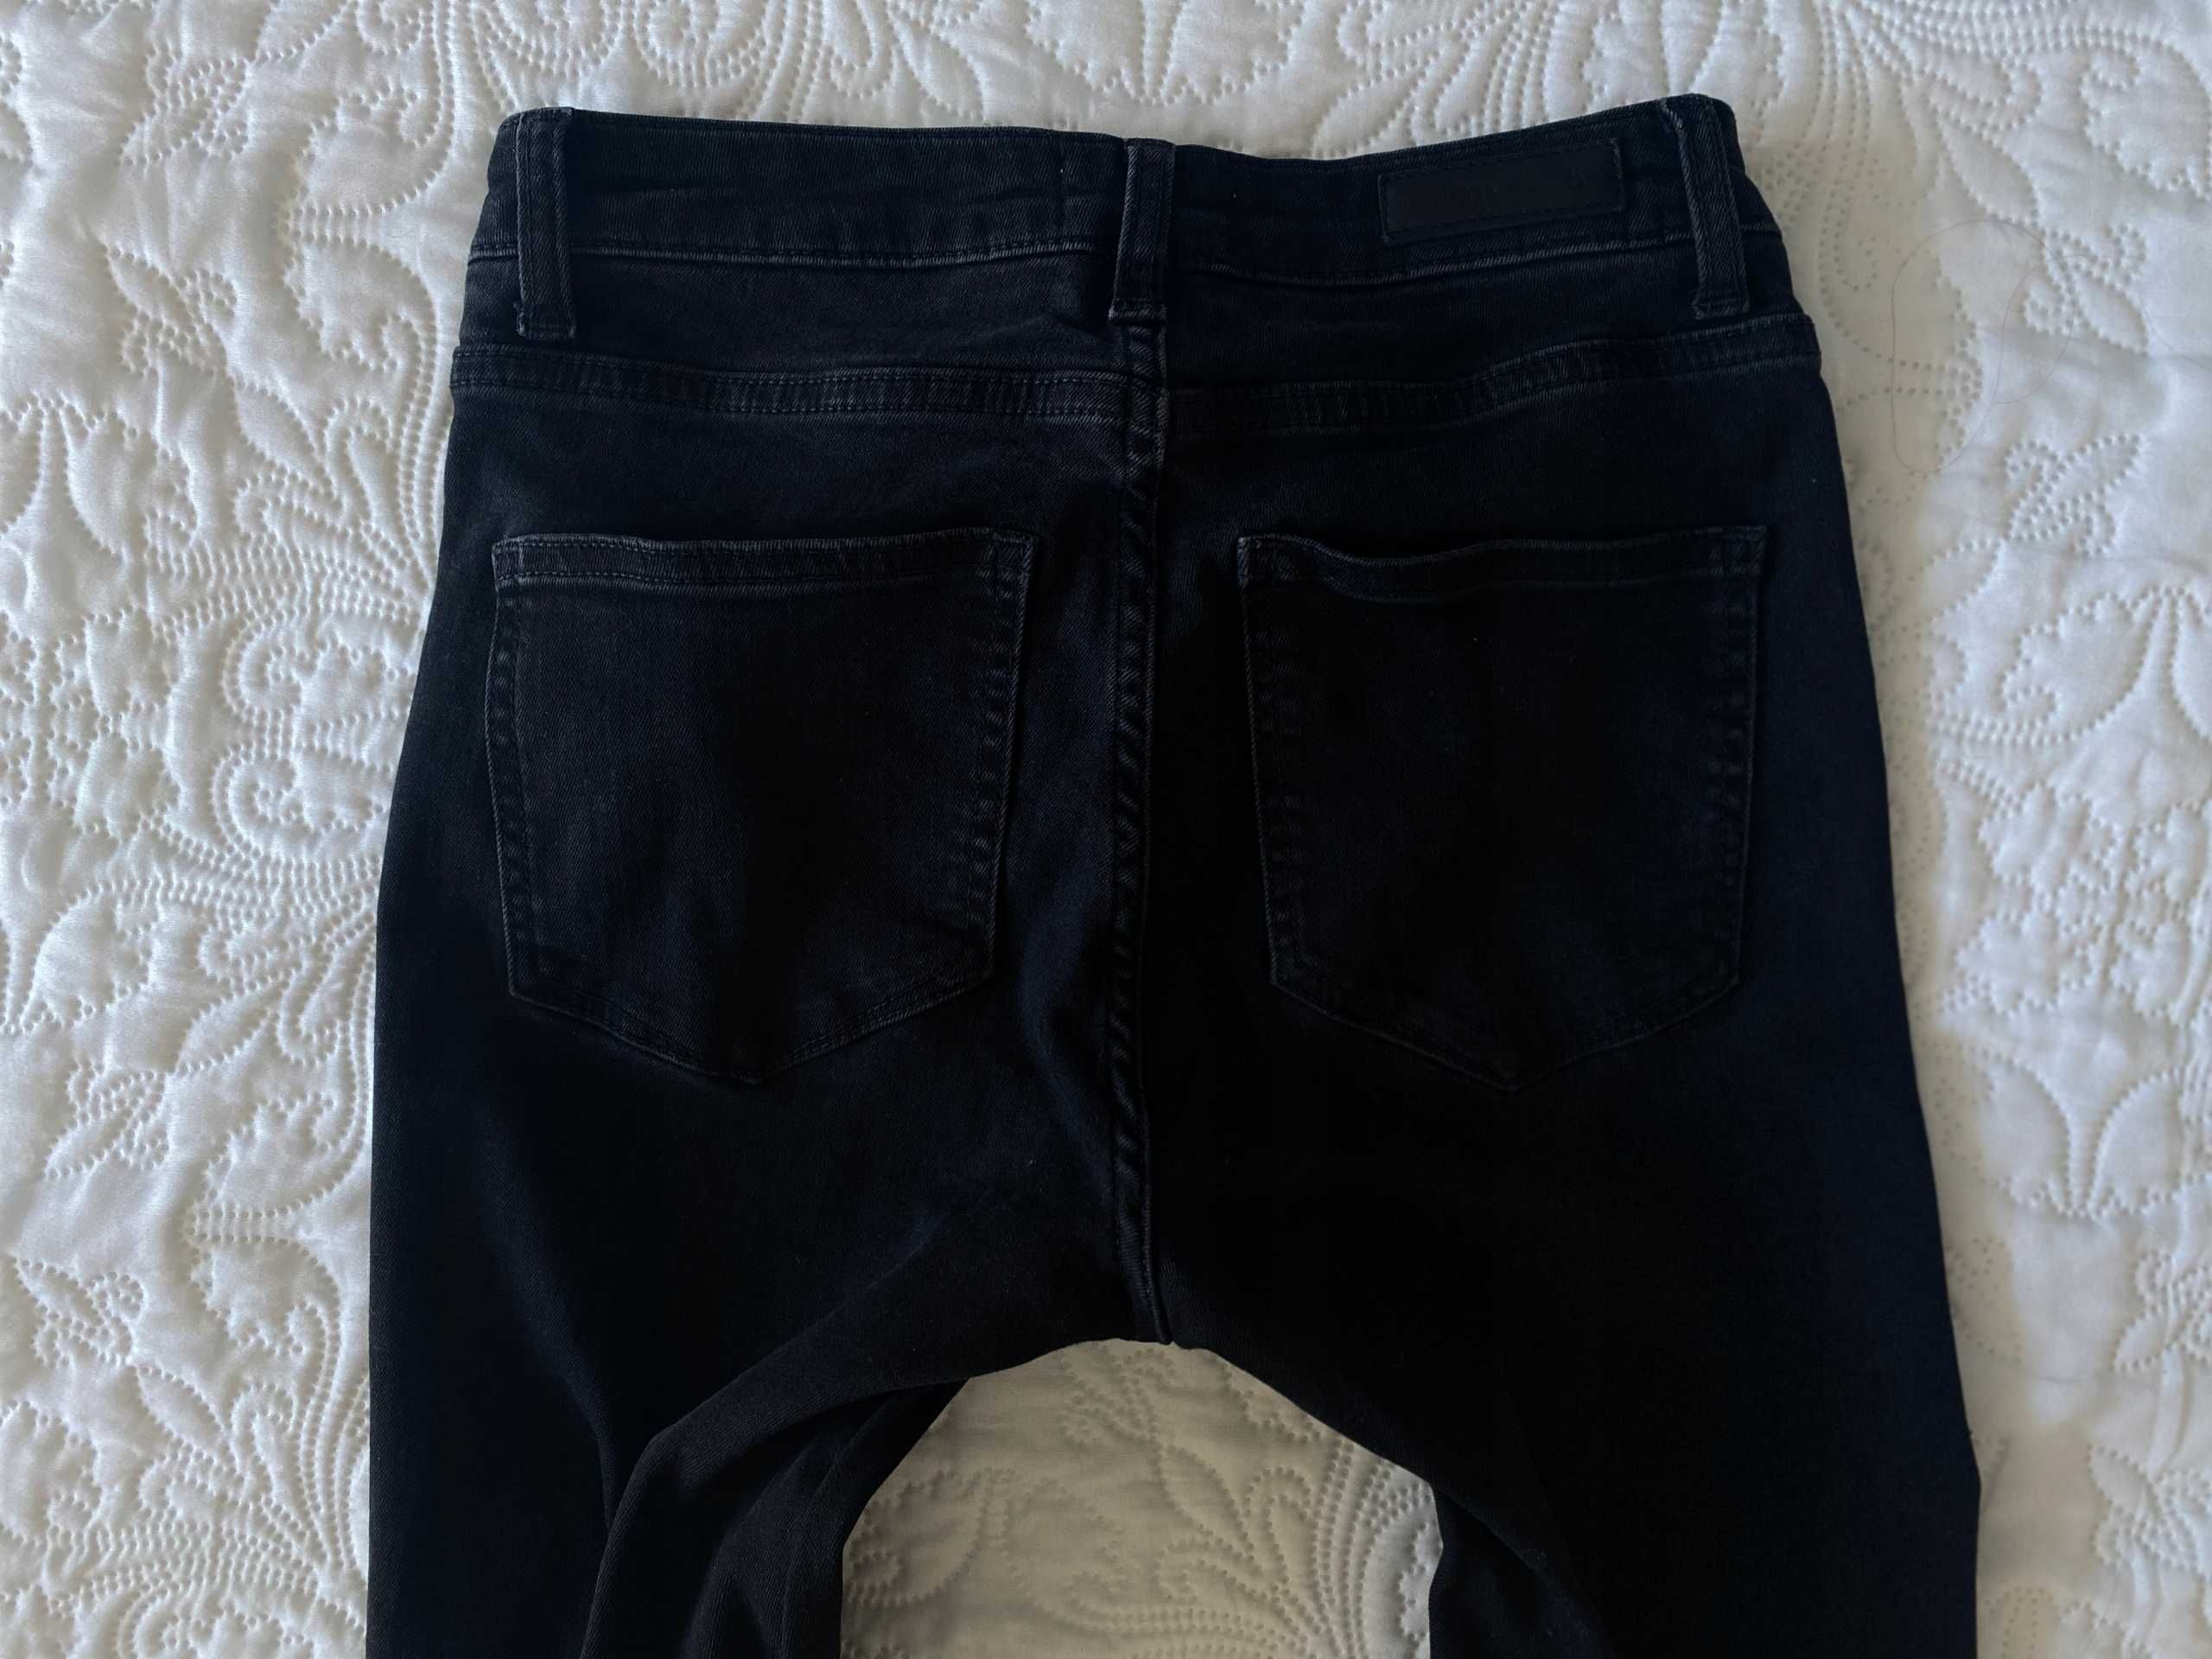 FIVEUNITS czarne jeansy damskie r. 34 XS, 36 S 25